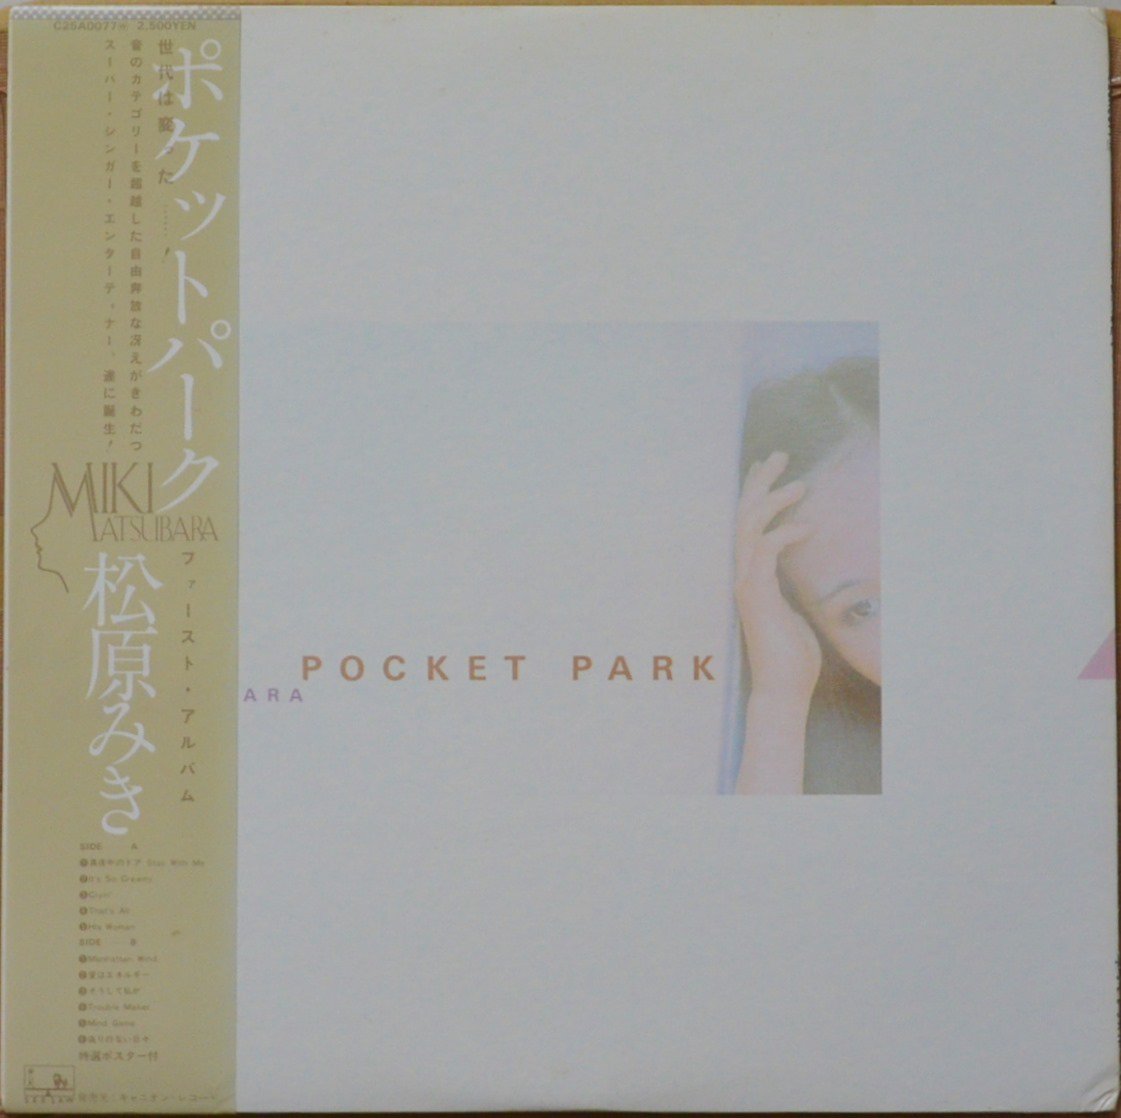 松原みき MIKI MATSUBARA / ポケットパーク POCKET PARK (LP) - HIP